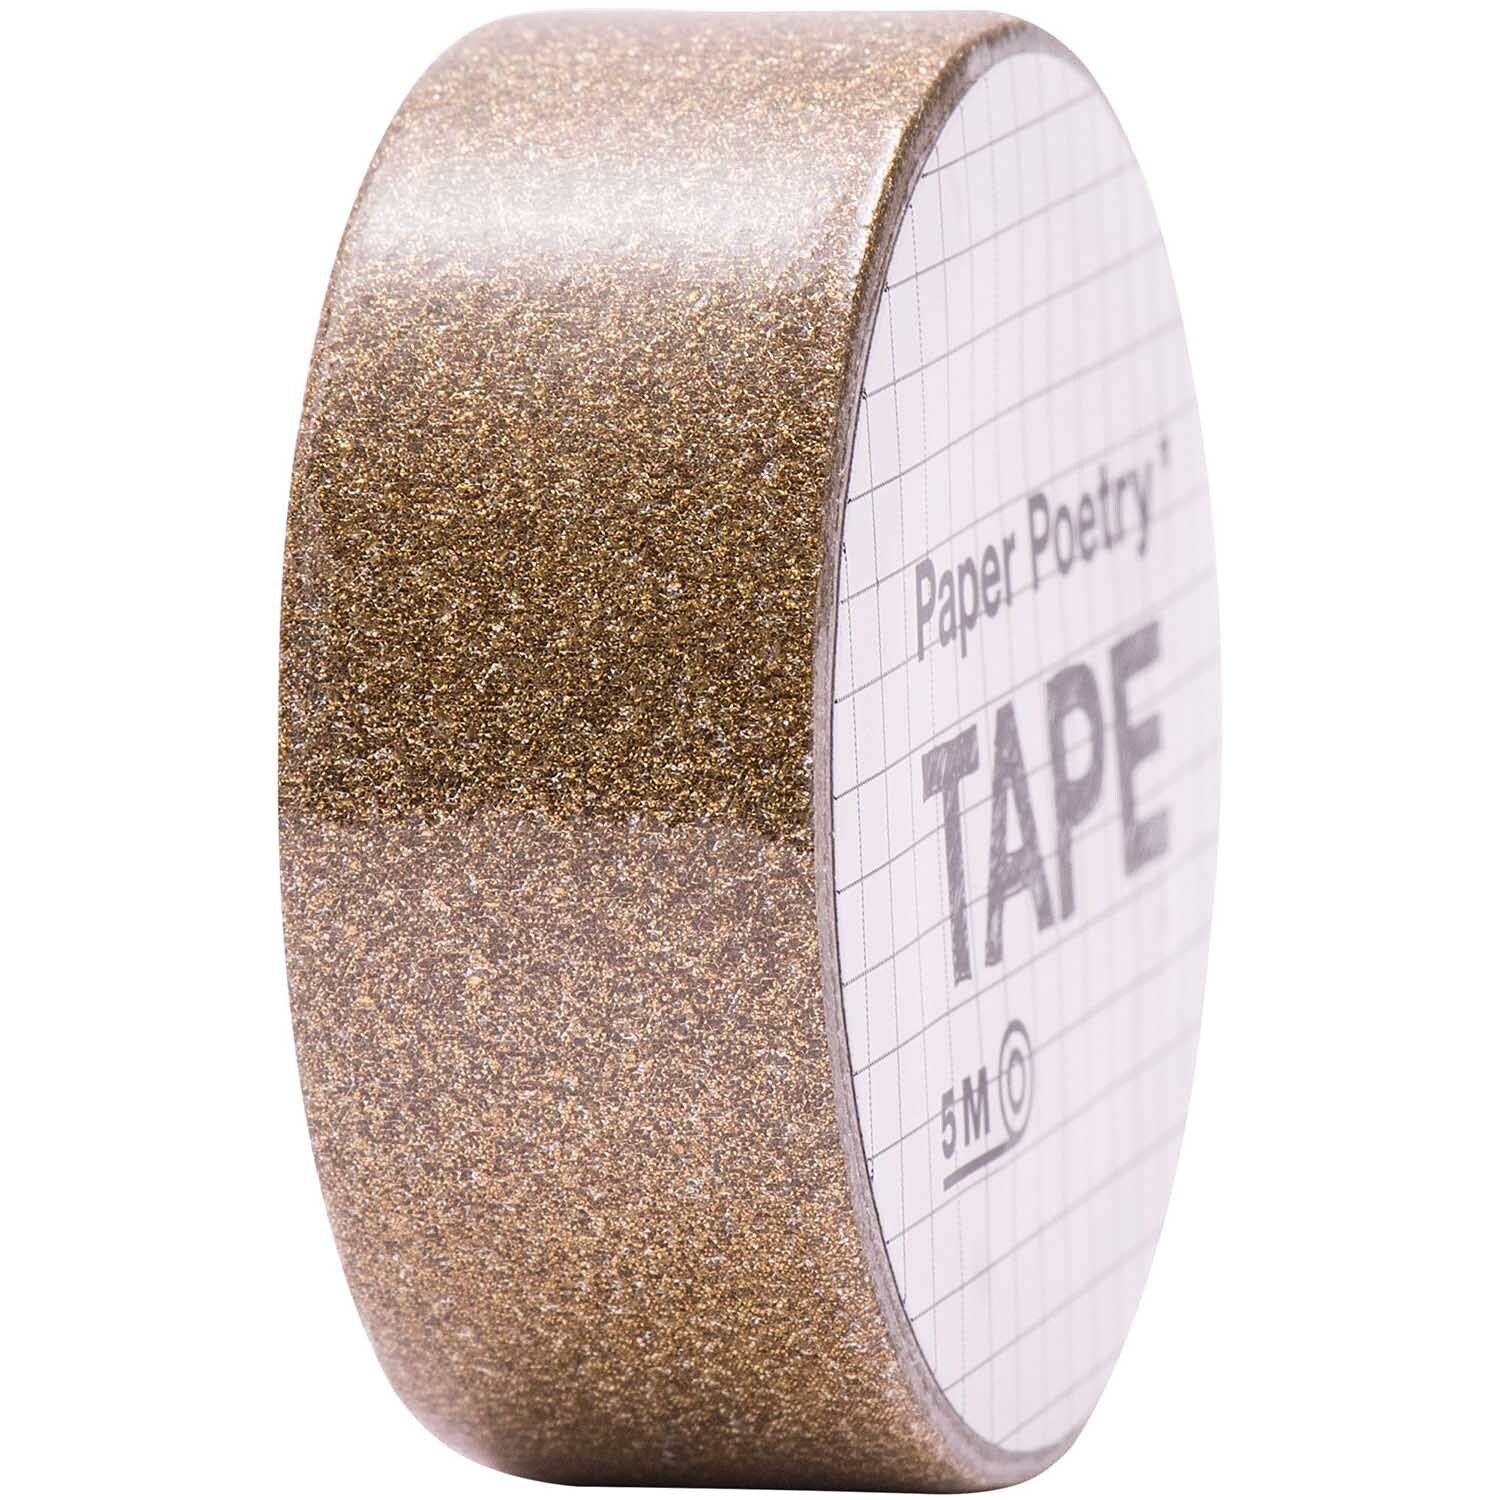 Paper Poetry Glitter Tape 1,5cm 5m